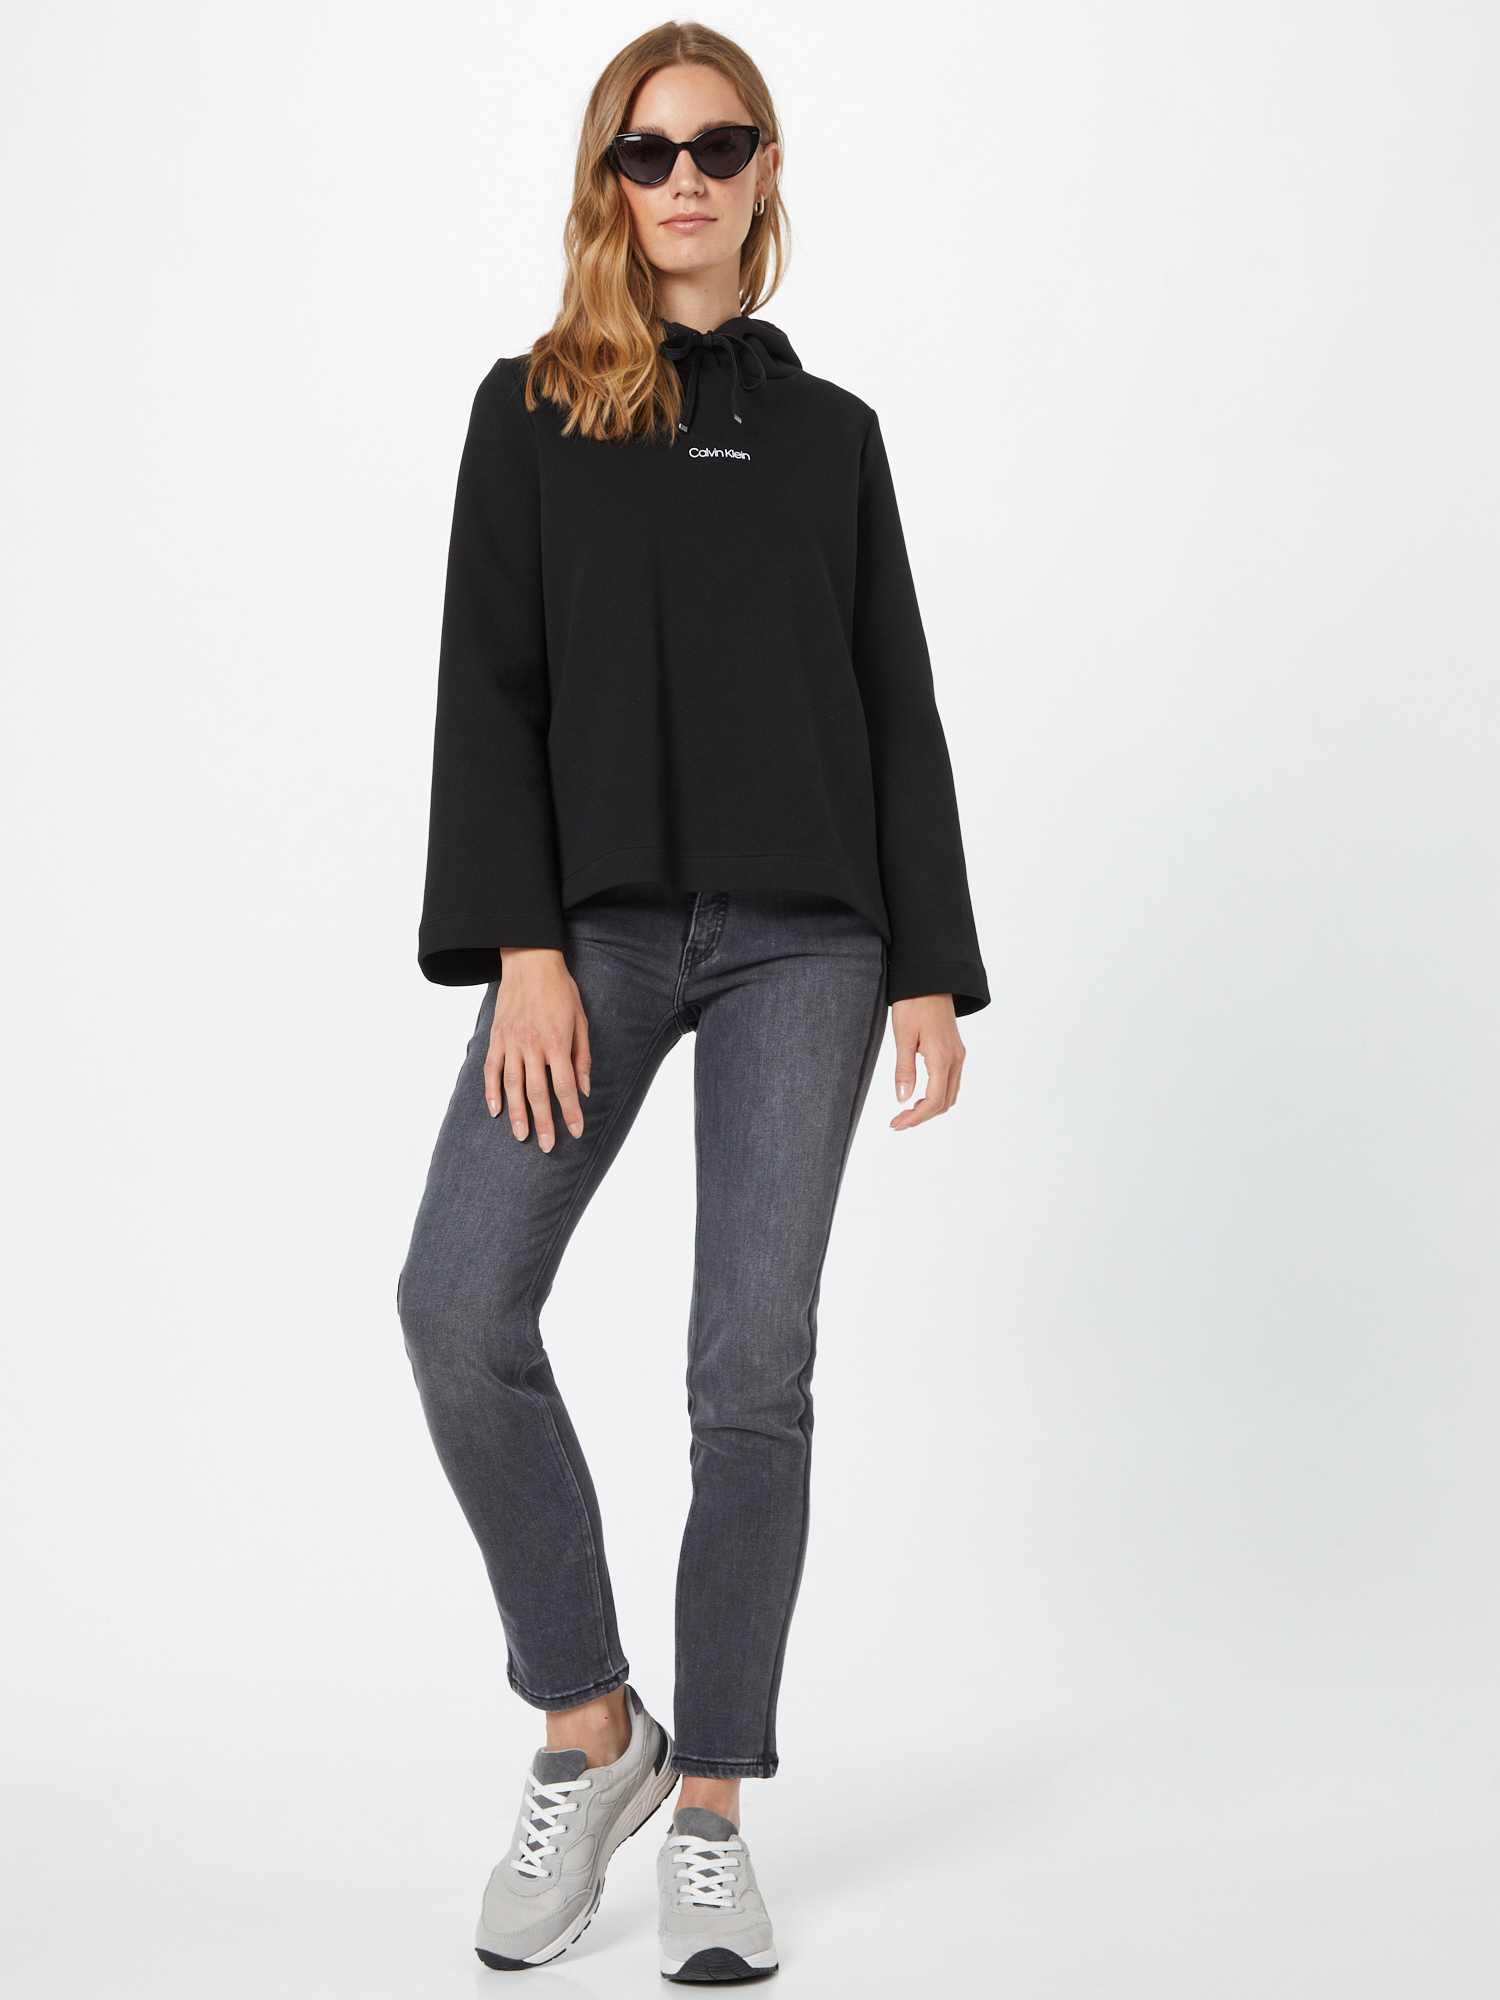 Calvin Klein Sweatshirt in Schwarz 